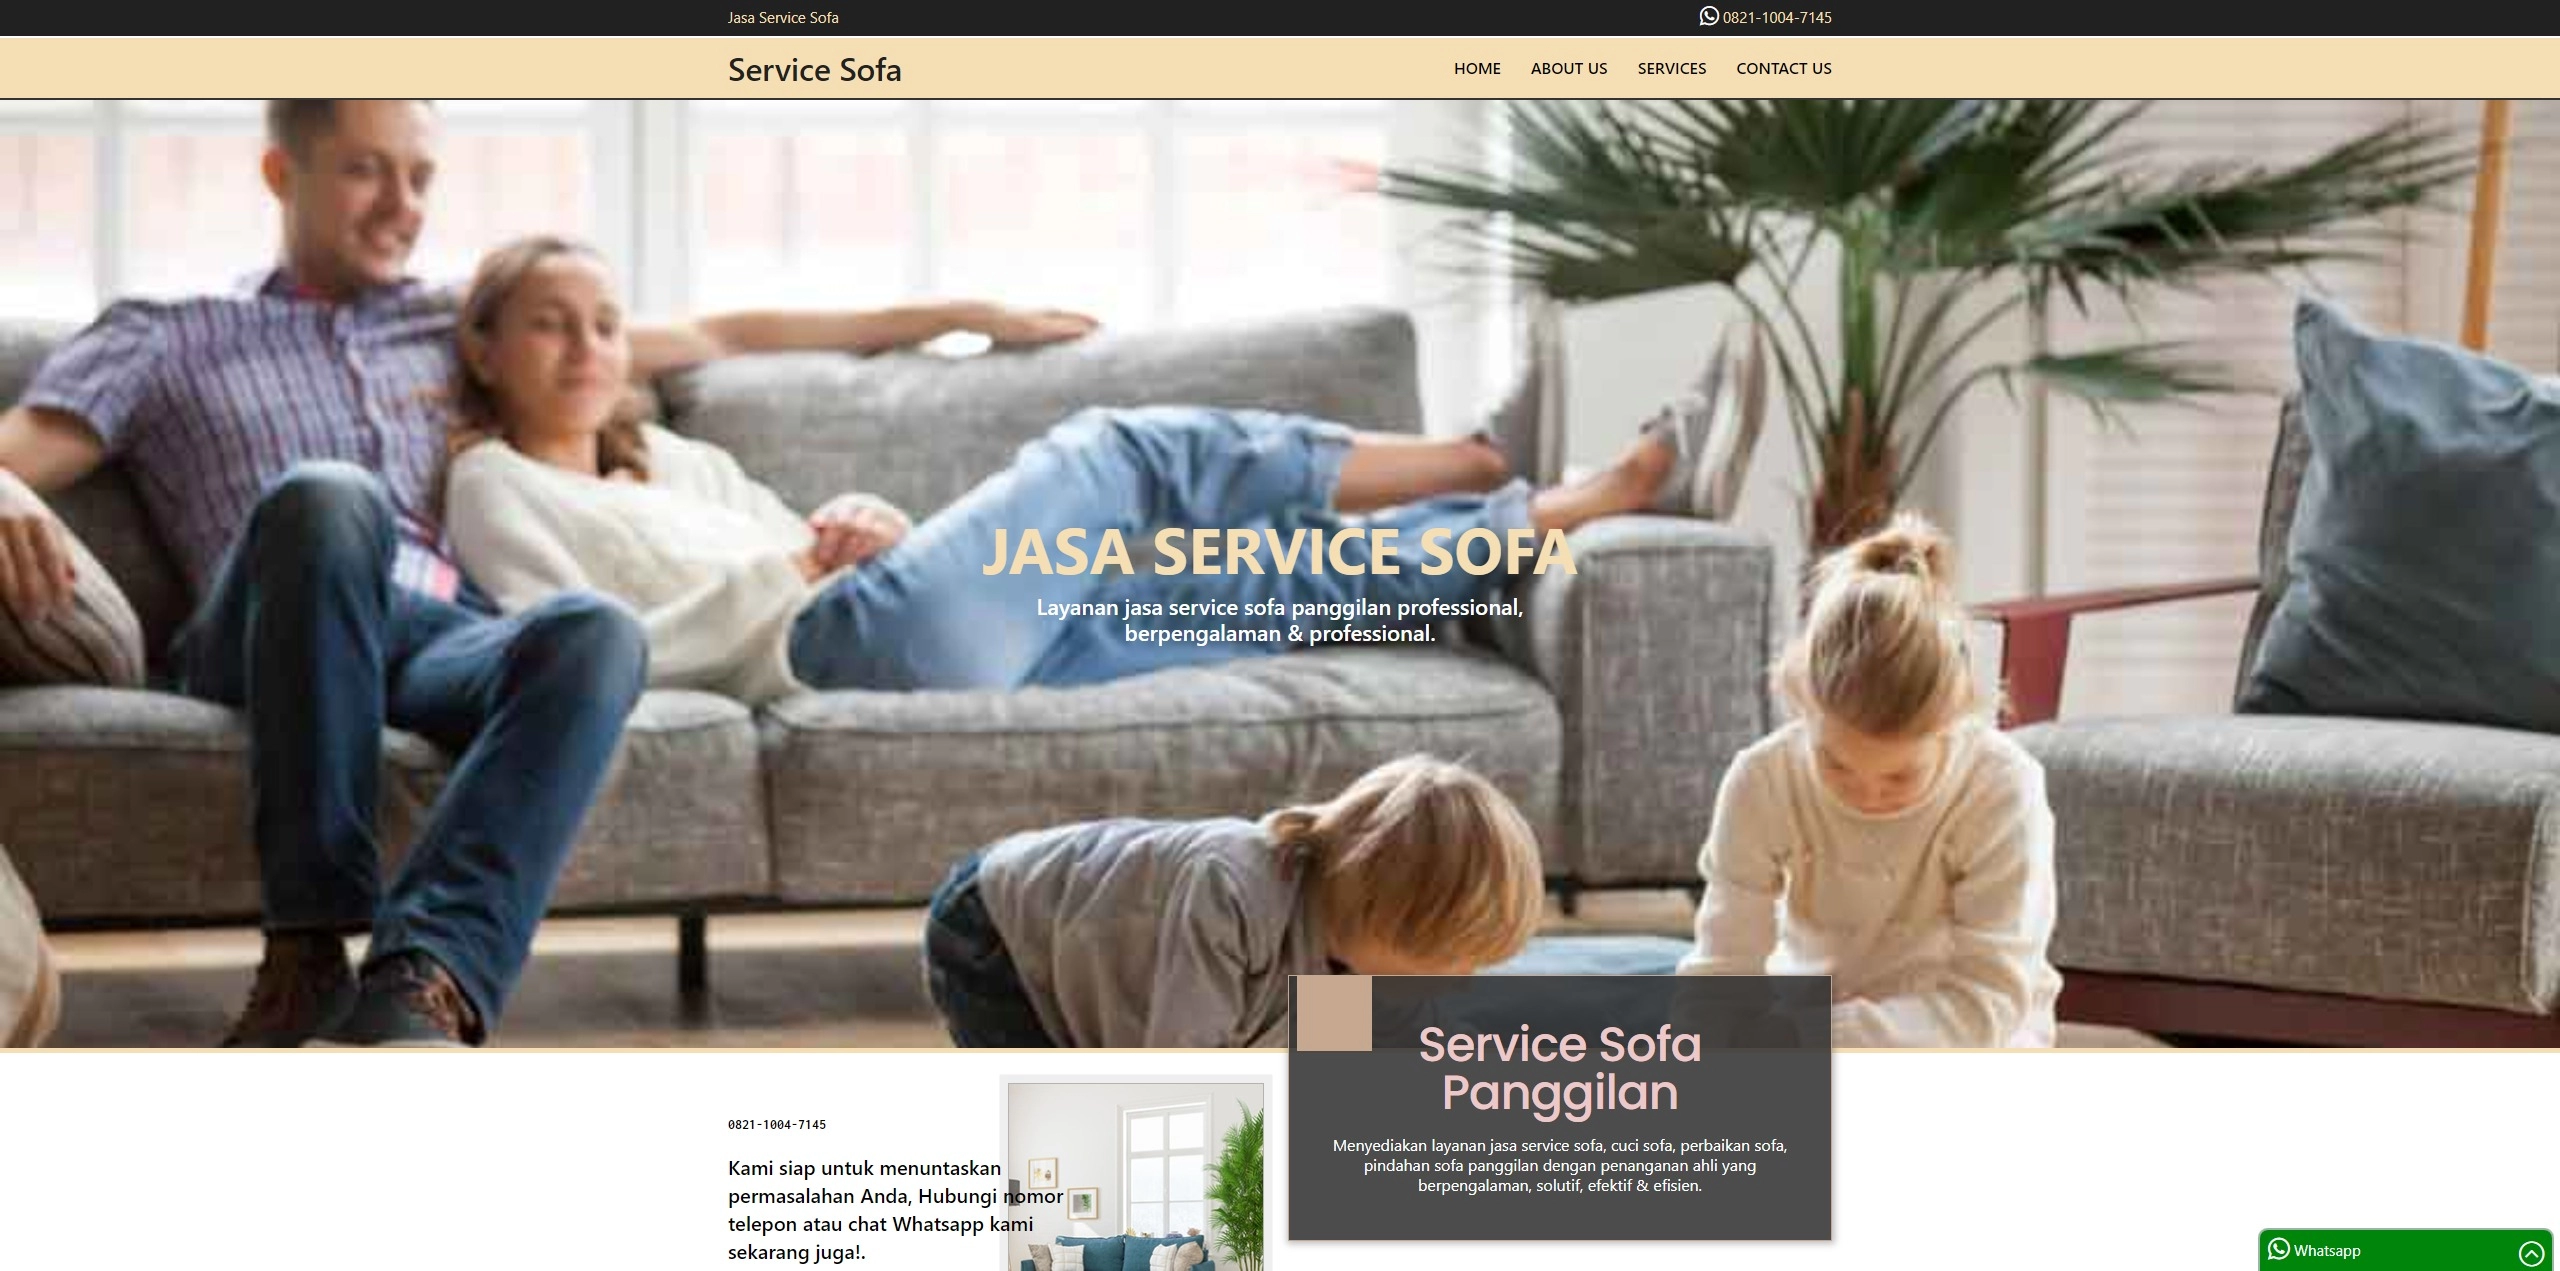 Jasa Service Sofa